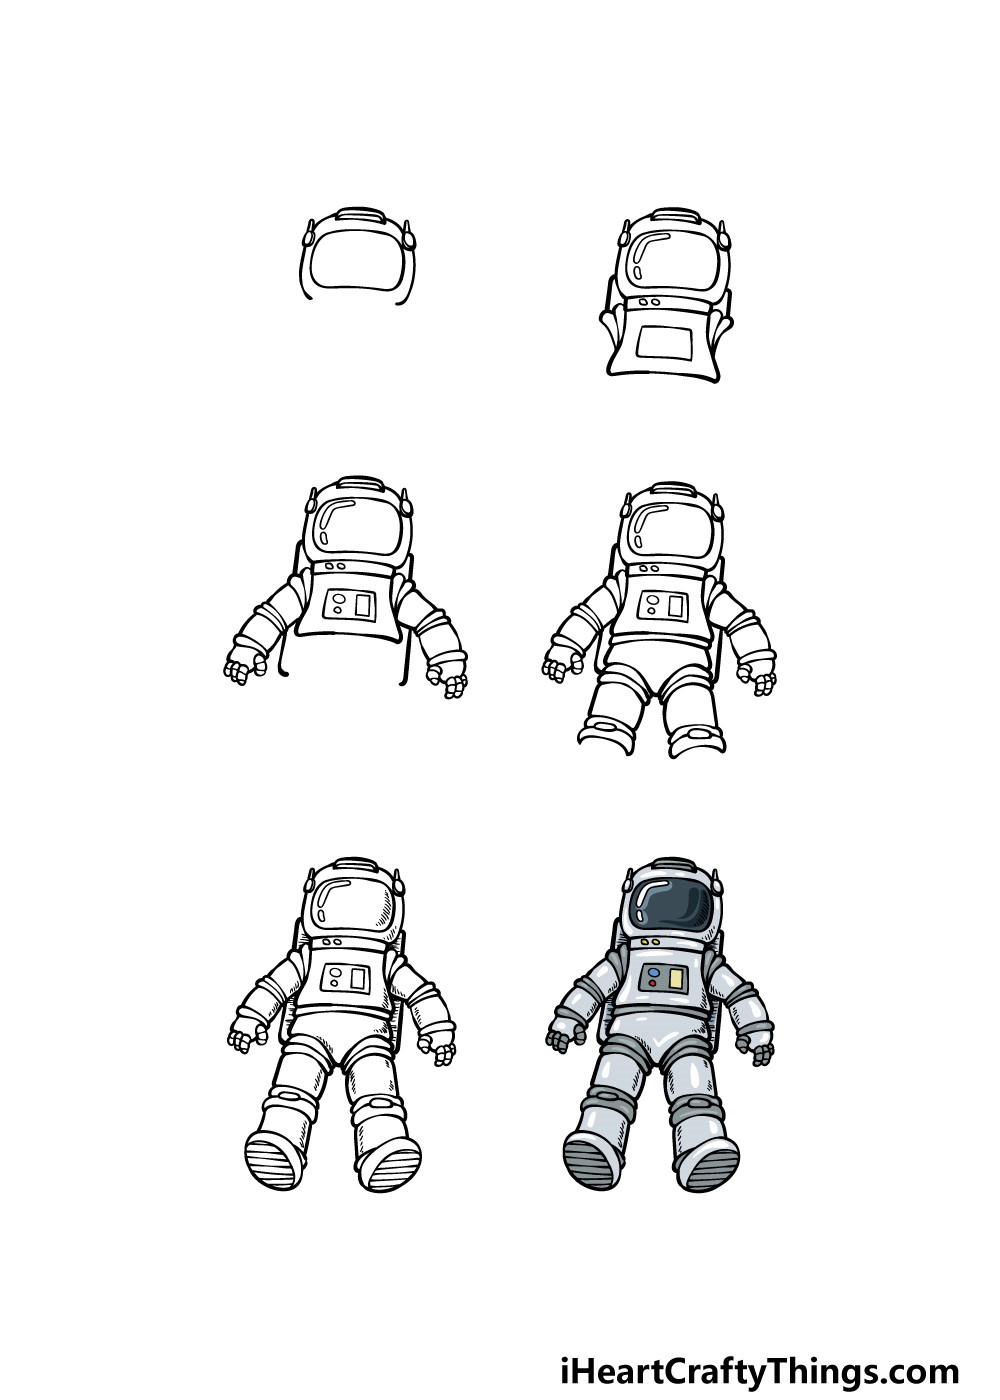 Astronauten-Idee 3 zeichnen ideen